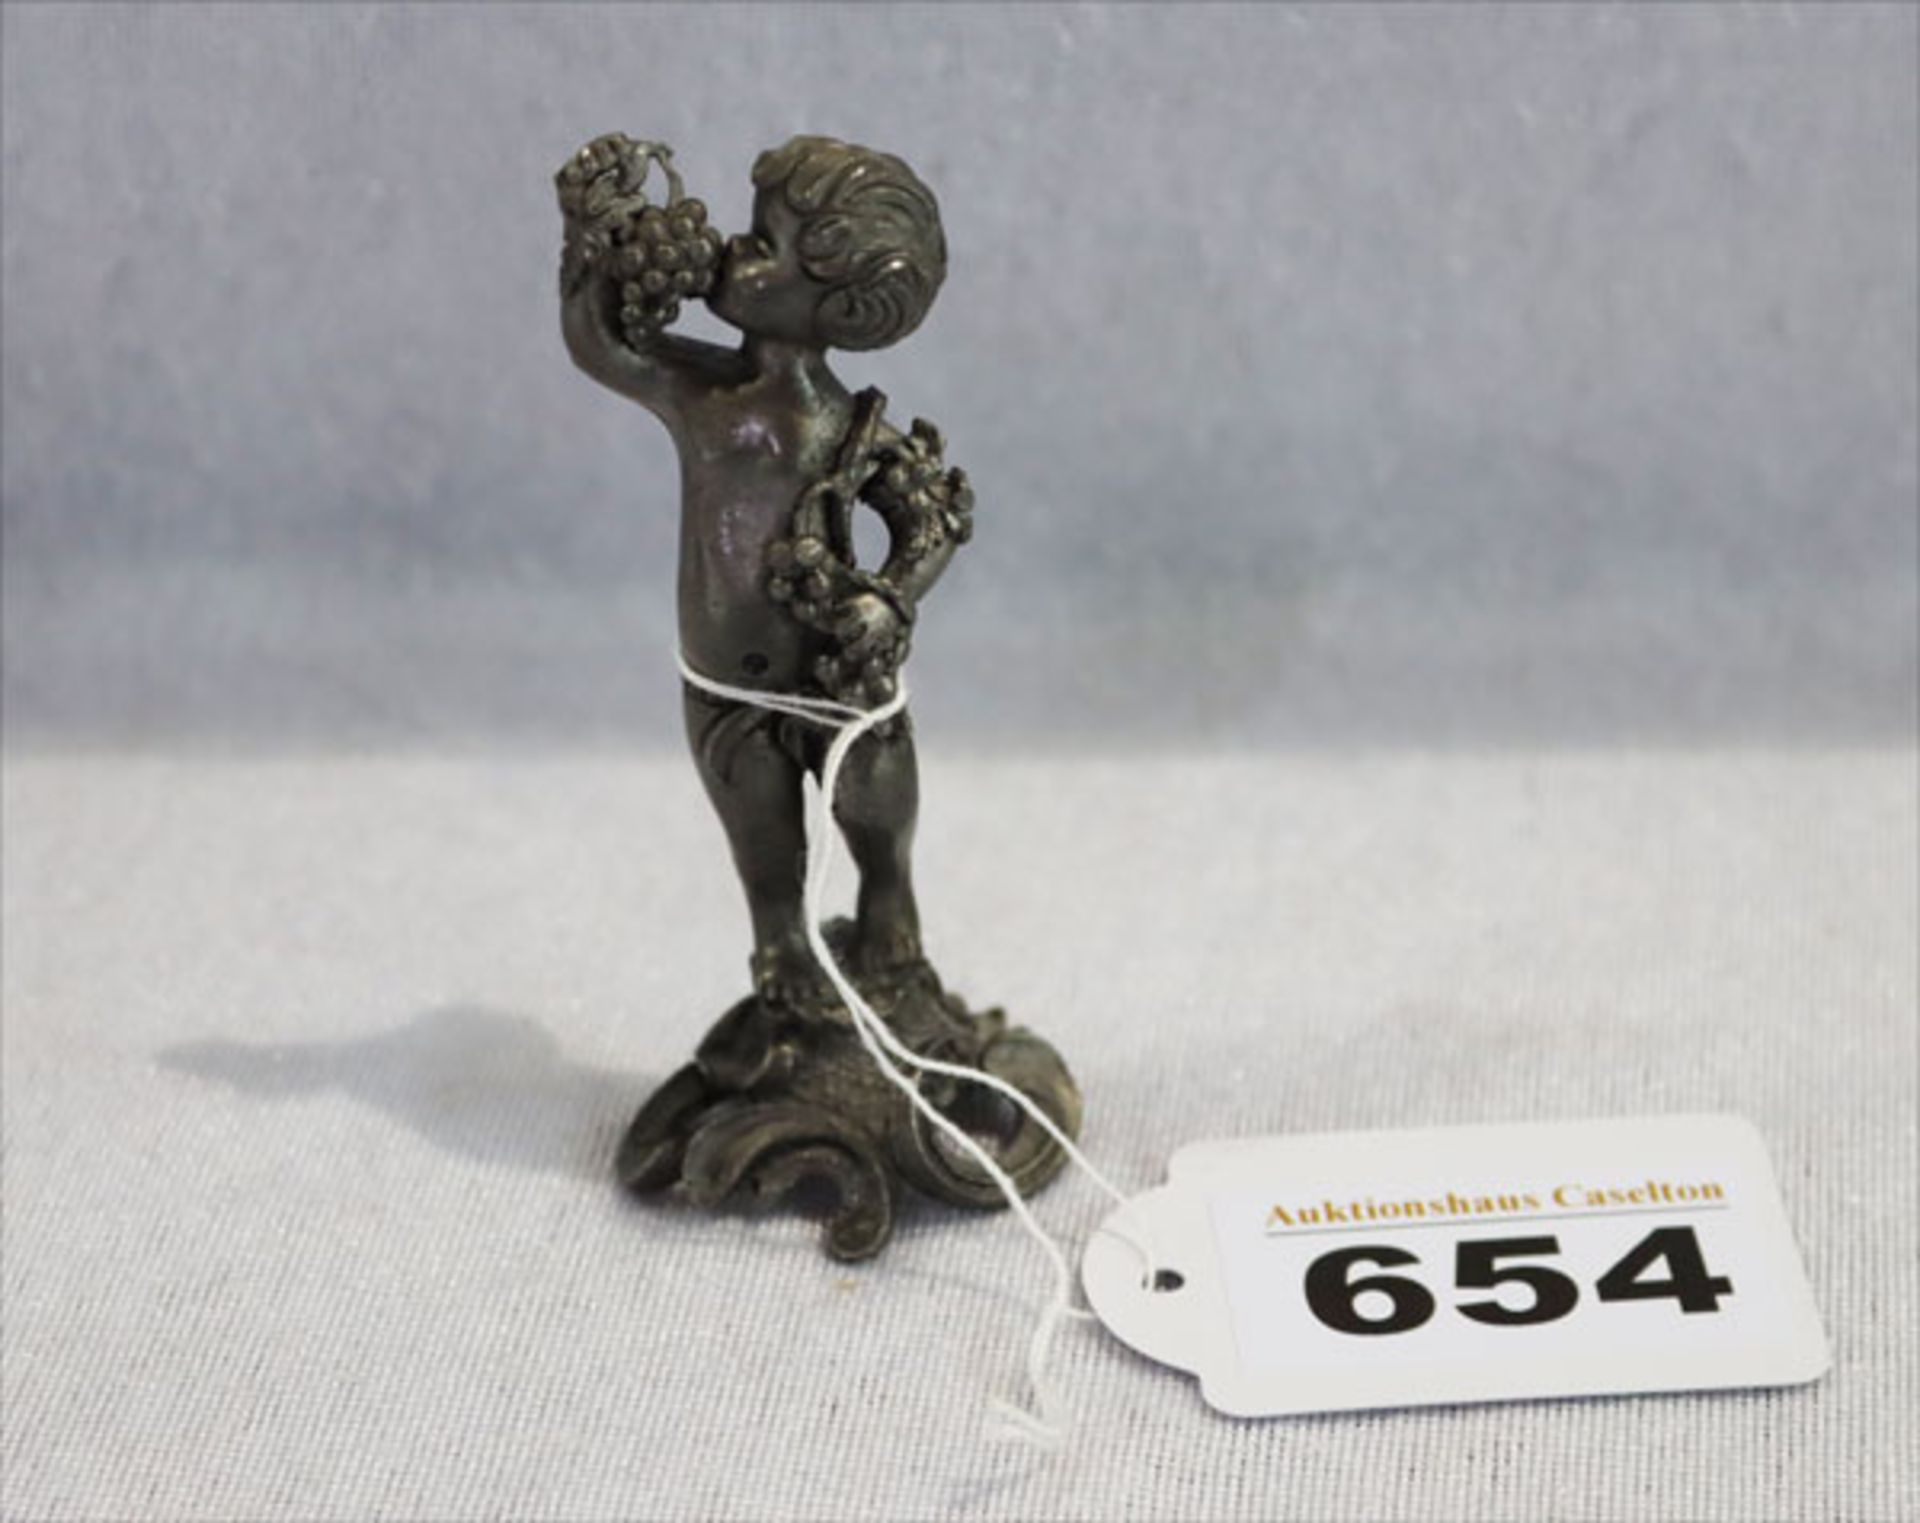 Zinnfigur 'Engel mit Trauben', H 7 cm, beschädigt